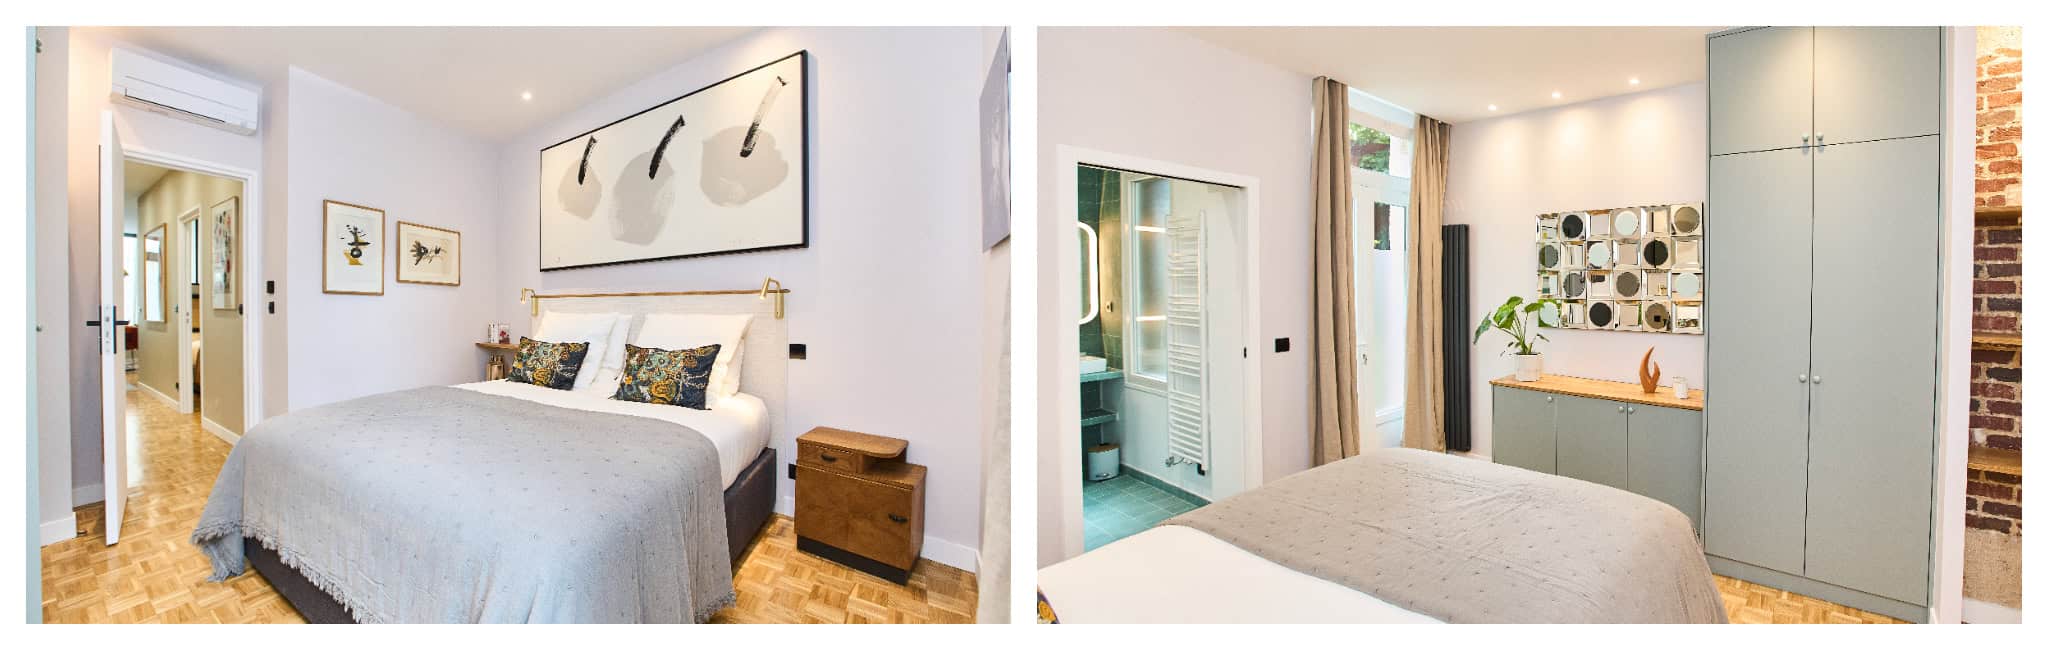 O quarto claro e arejado do apartamento Rue Etex, com roupa de cama branca, janela e vista para o banheiro privativo.